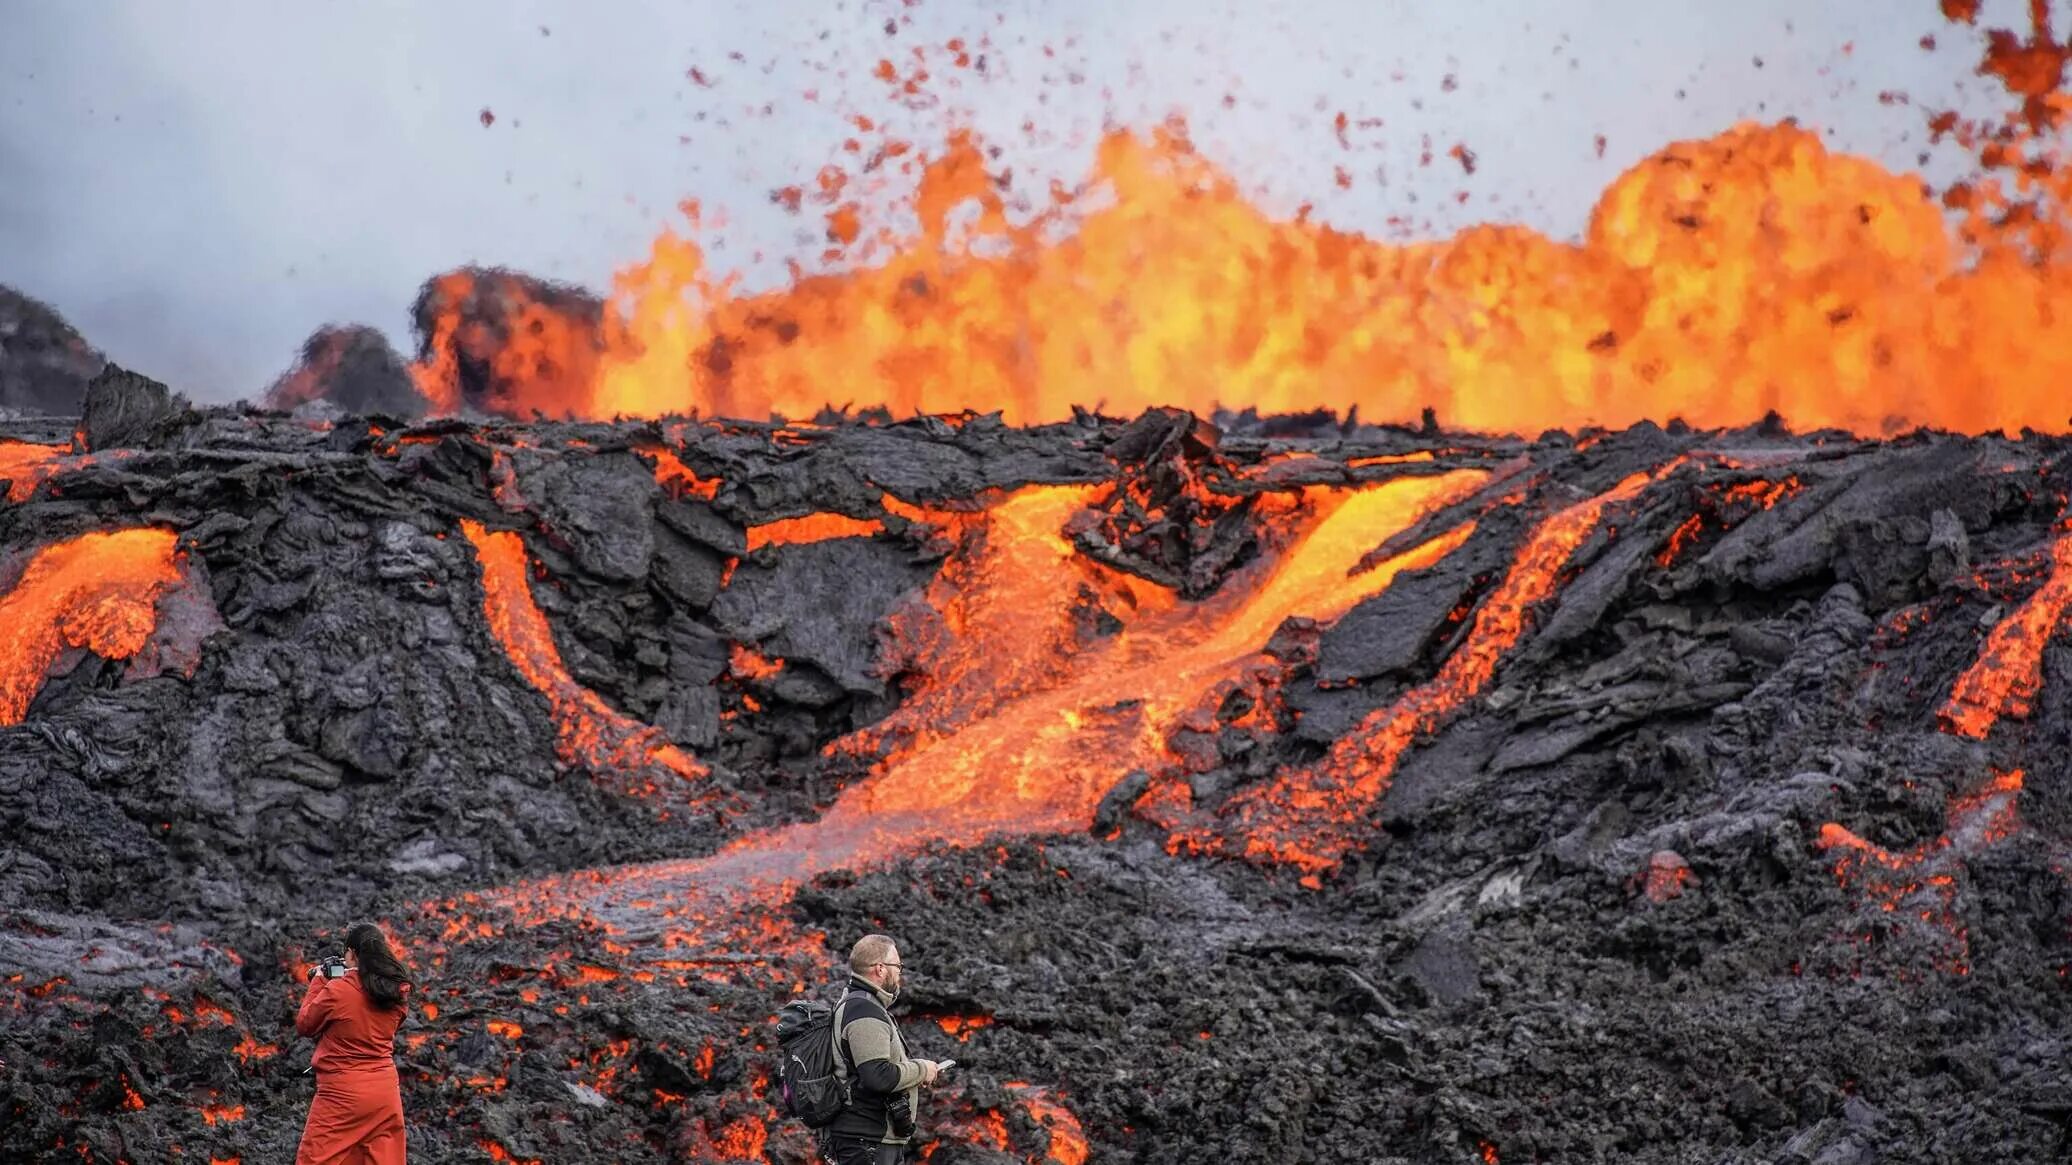 Сильные землетрясения извержения вулканов мощные гейзеры. Вулкан в Исландии фаградальсфьядль. Извержение вулкана на Камчатке 2022. Извержение вулкана в Исландии Эйяфьятлайокудль. Рейкьявик Исландия вулканические лава.